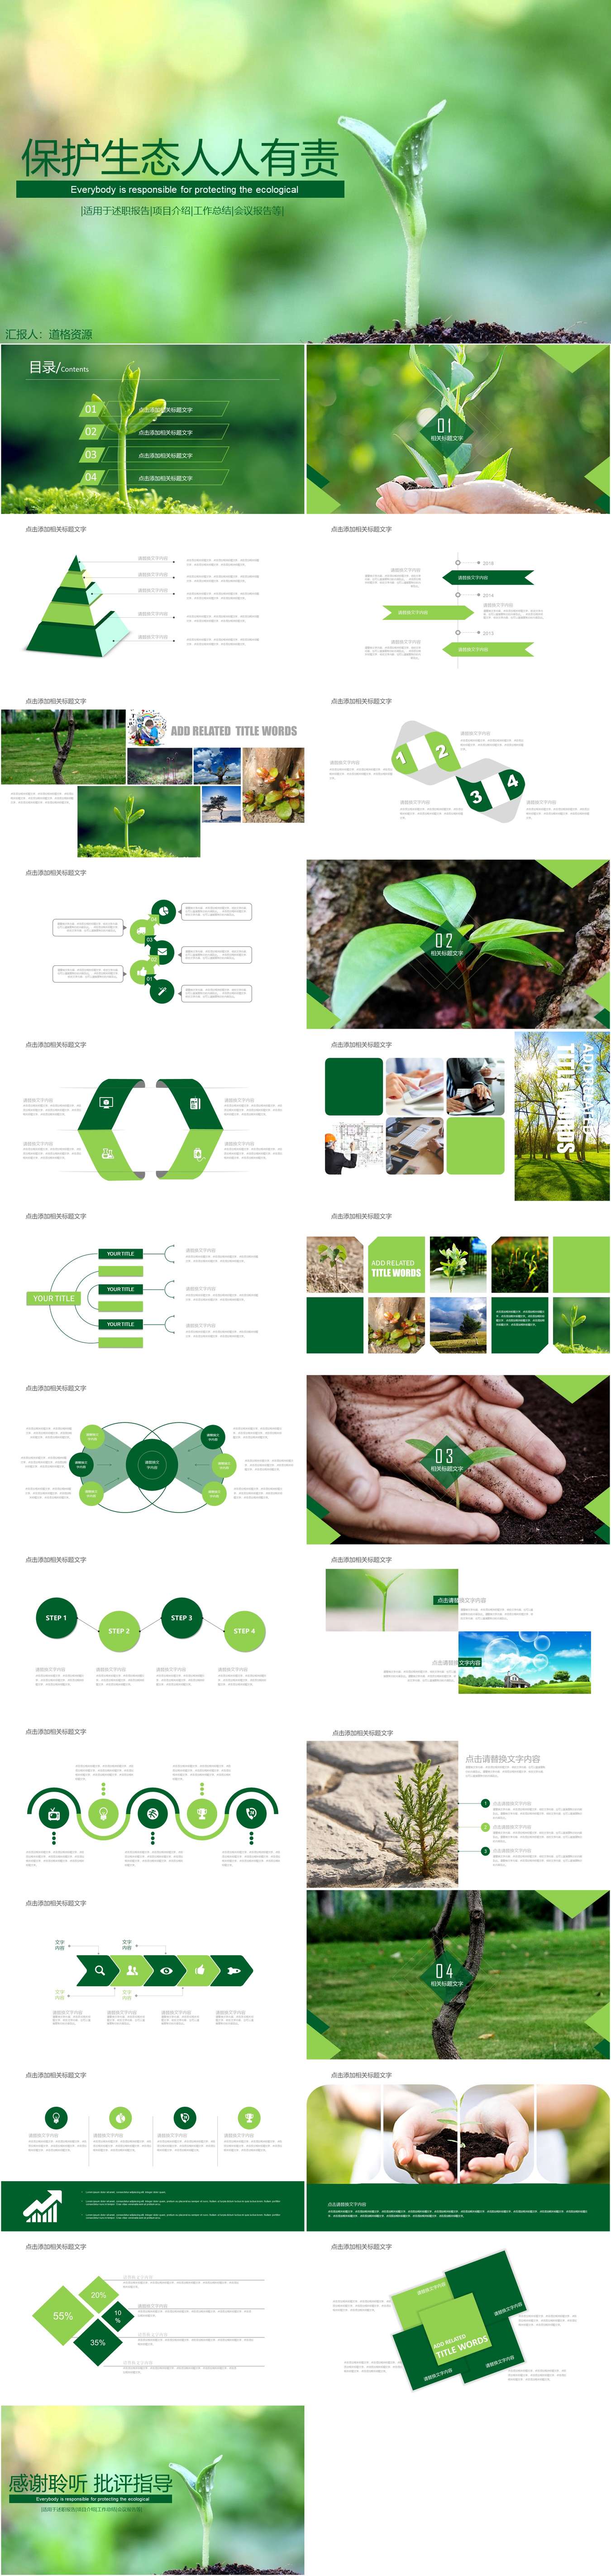 绿色节能爱护环境低碳环保PPT模板